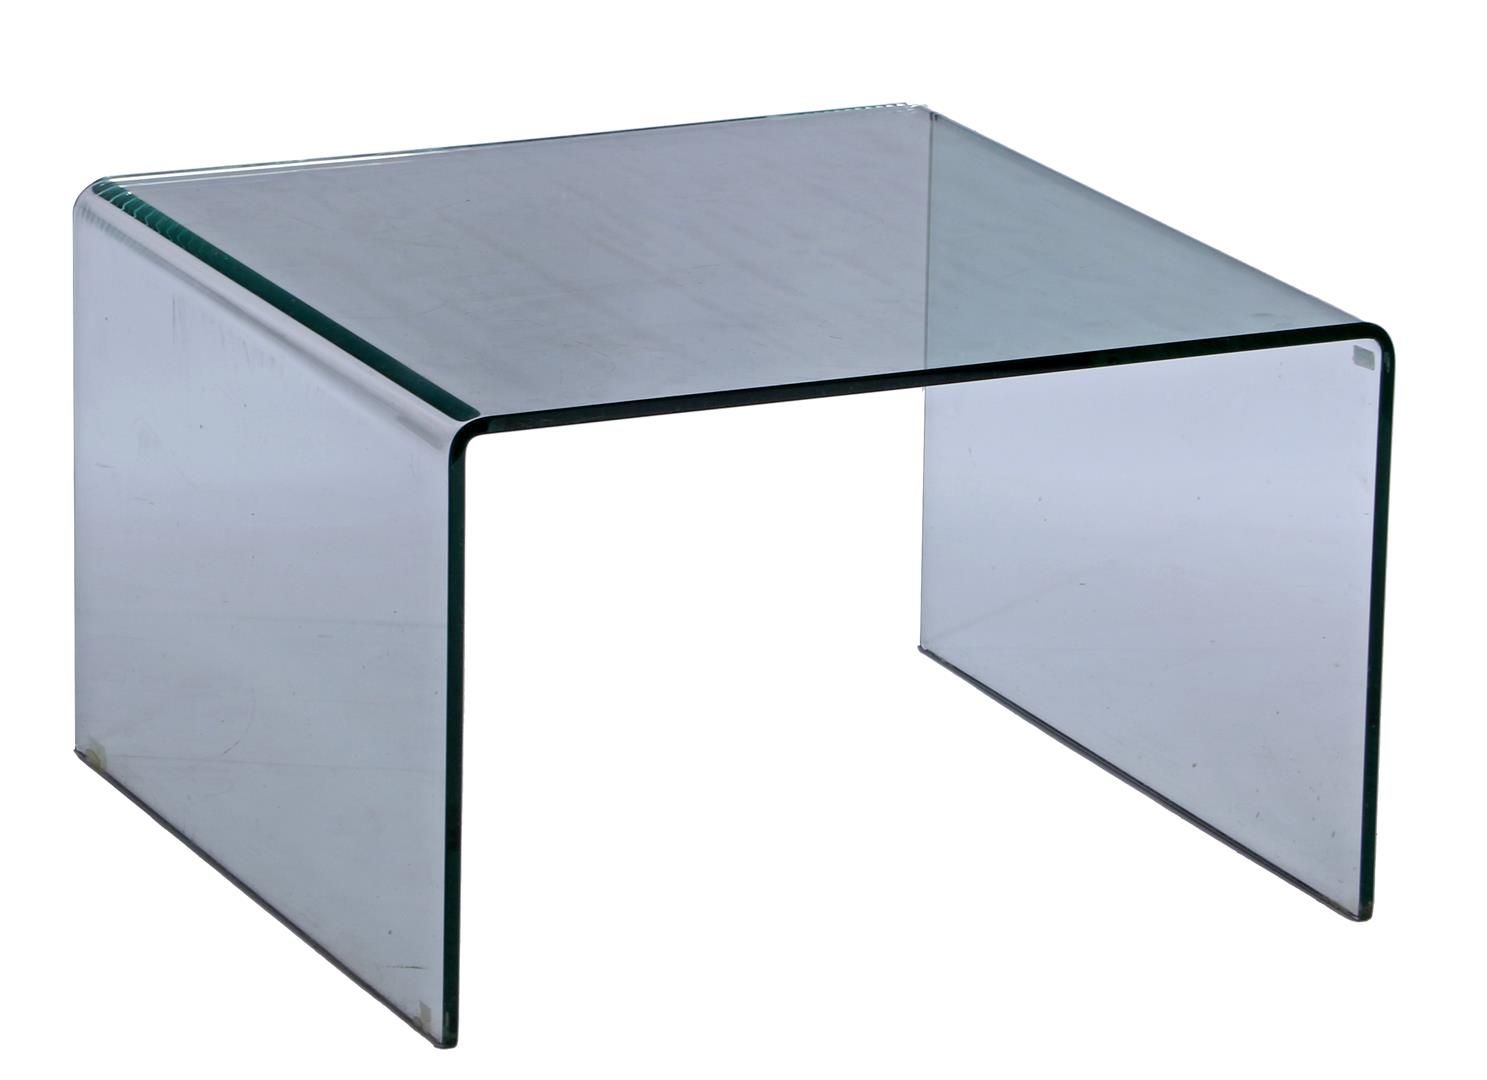 Null 瀑布式玻璃弧形茶几，高 37 厘米，桌面尺寸 60x60 厘米